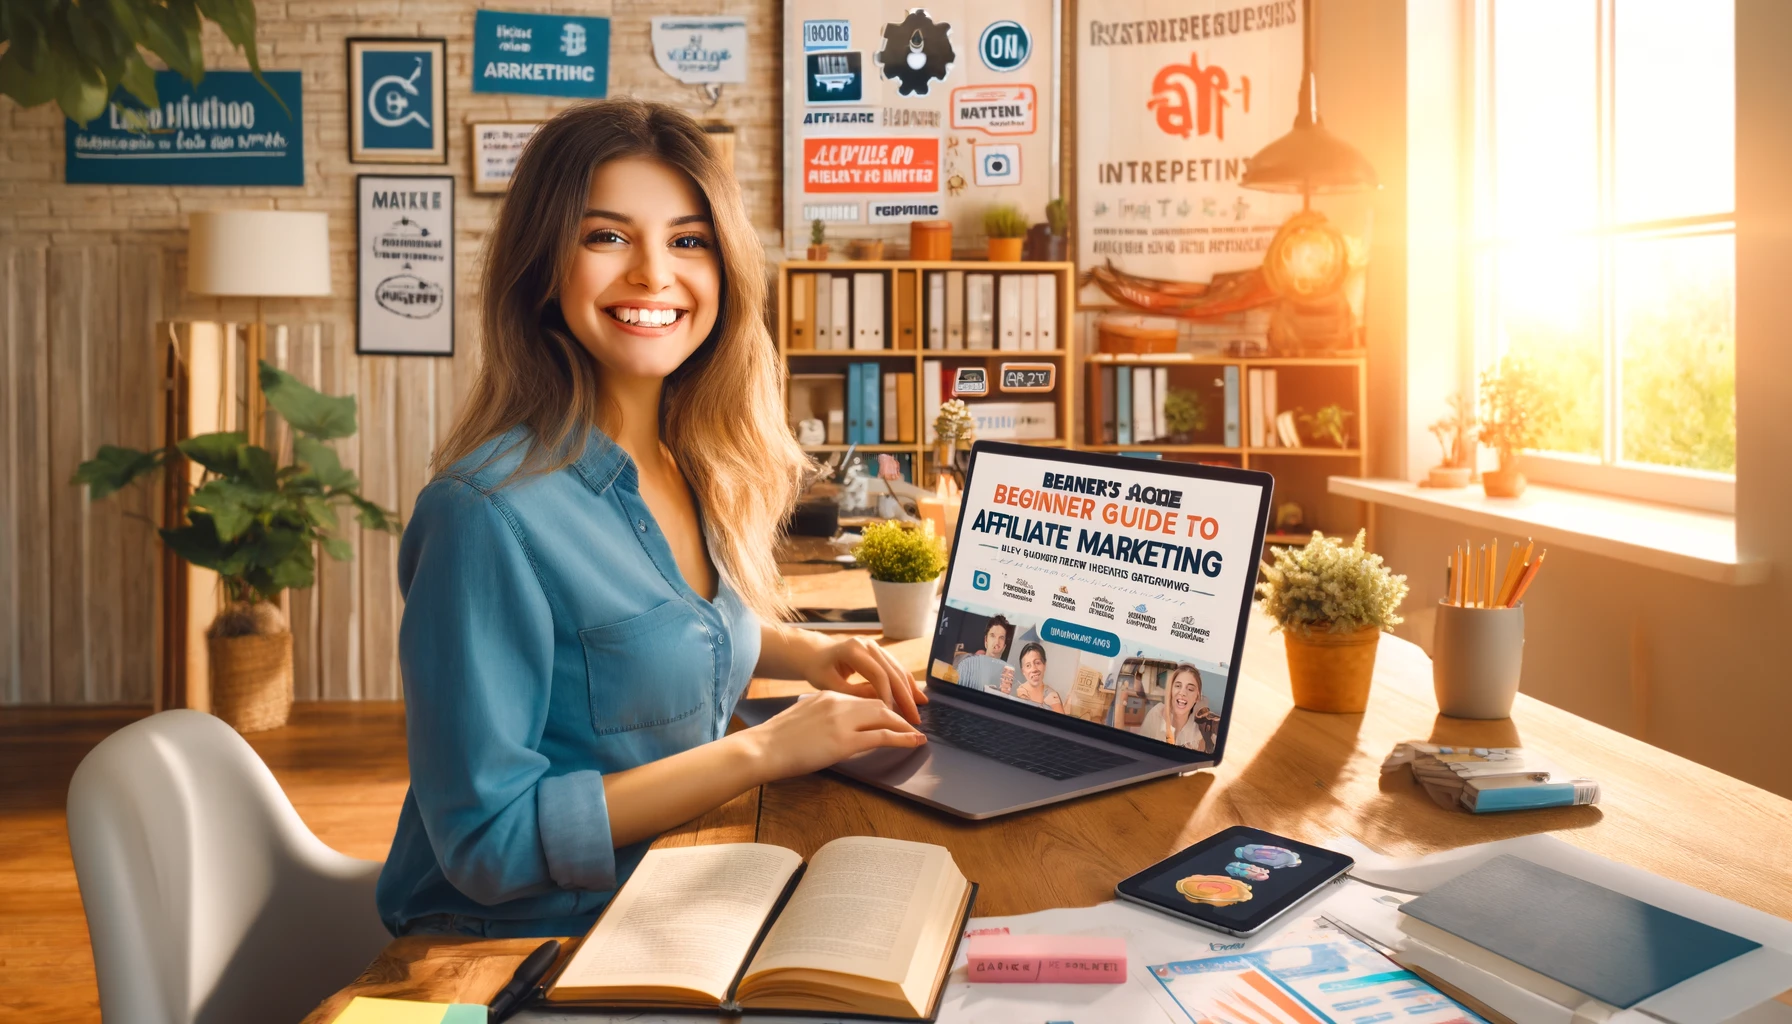 Jeune femme épanouie travaillant dans son bureau à domicile, consulte un guide de marketing pour gagner sur internet avec son ordinateur portable